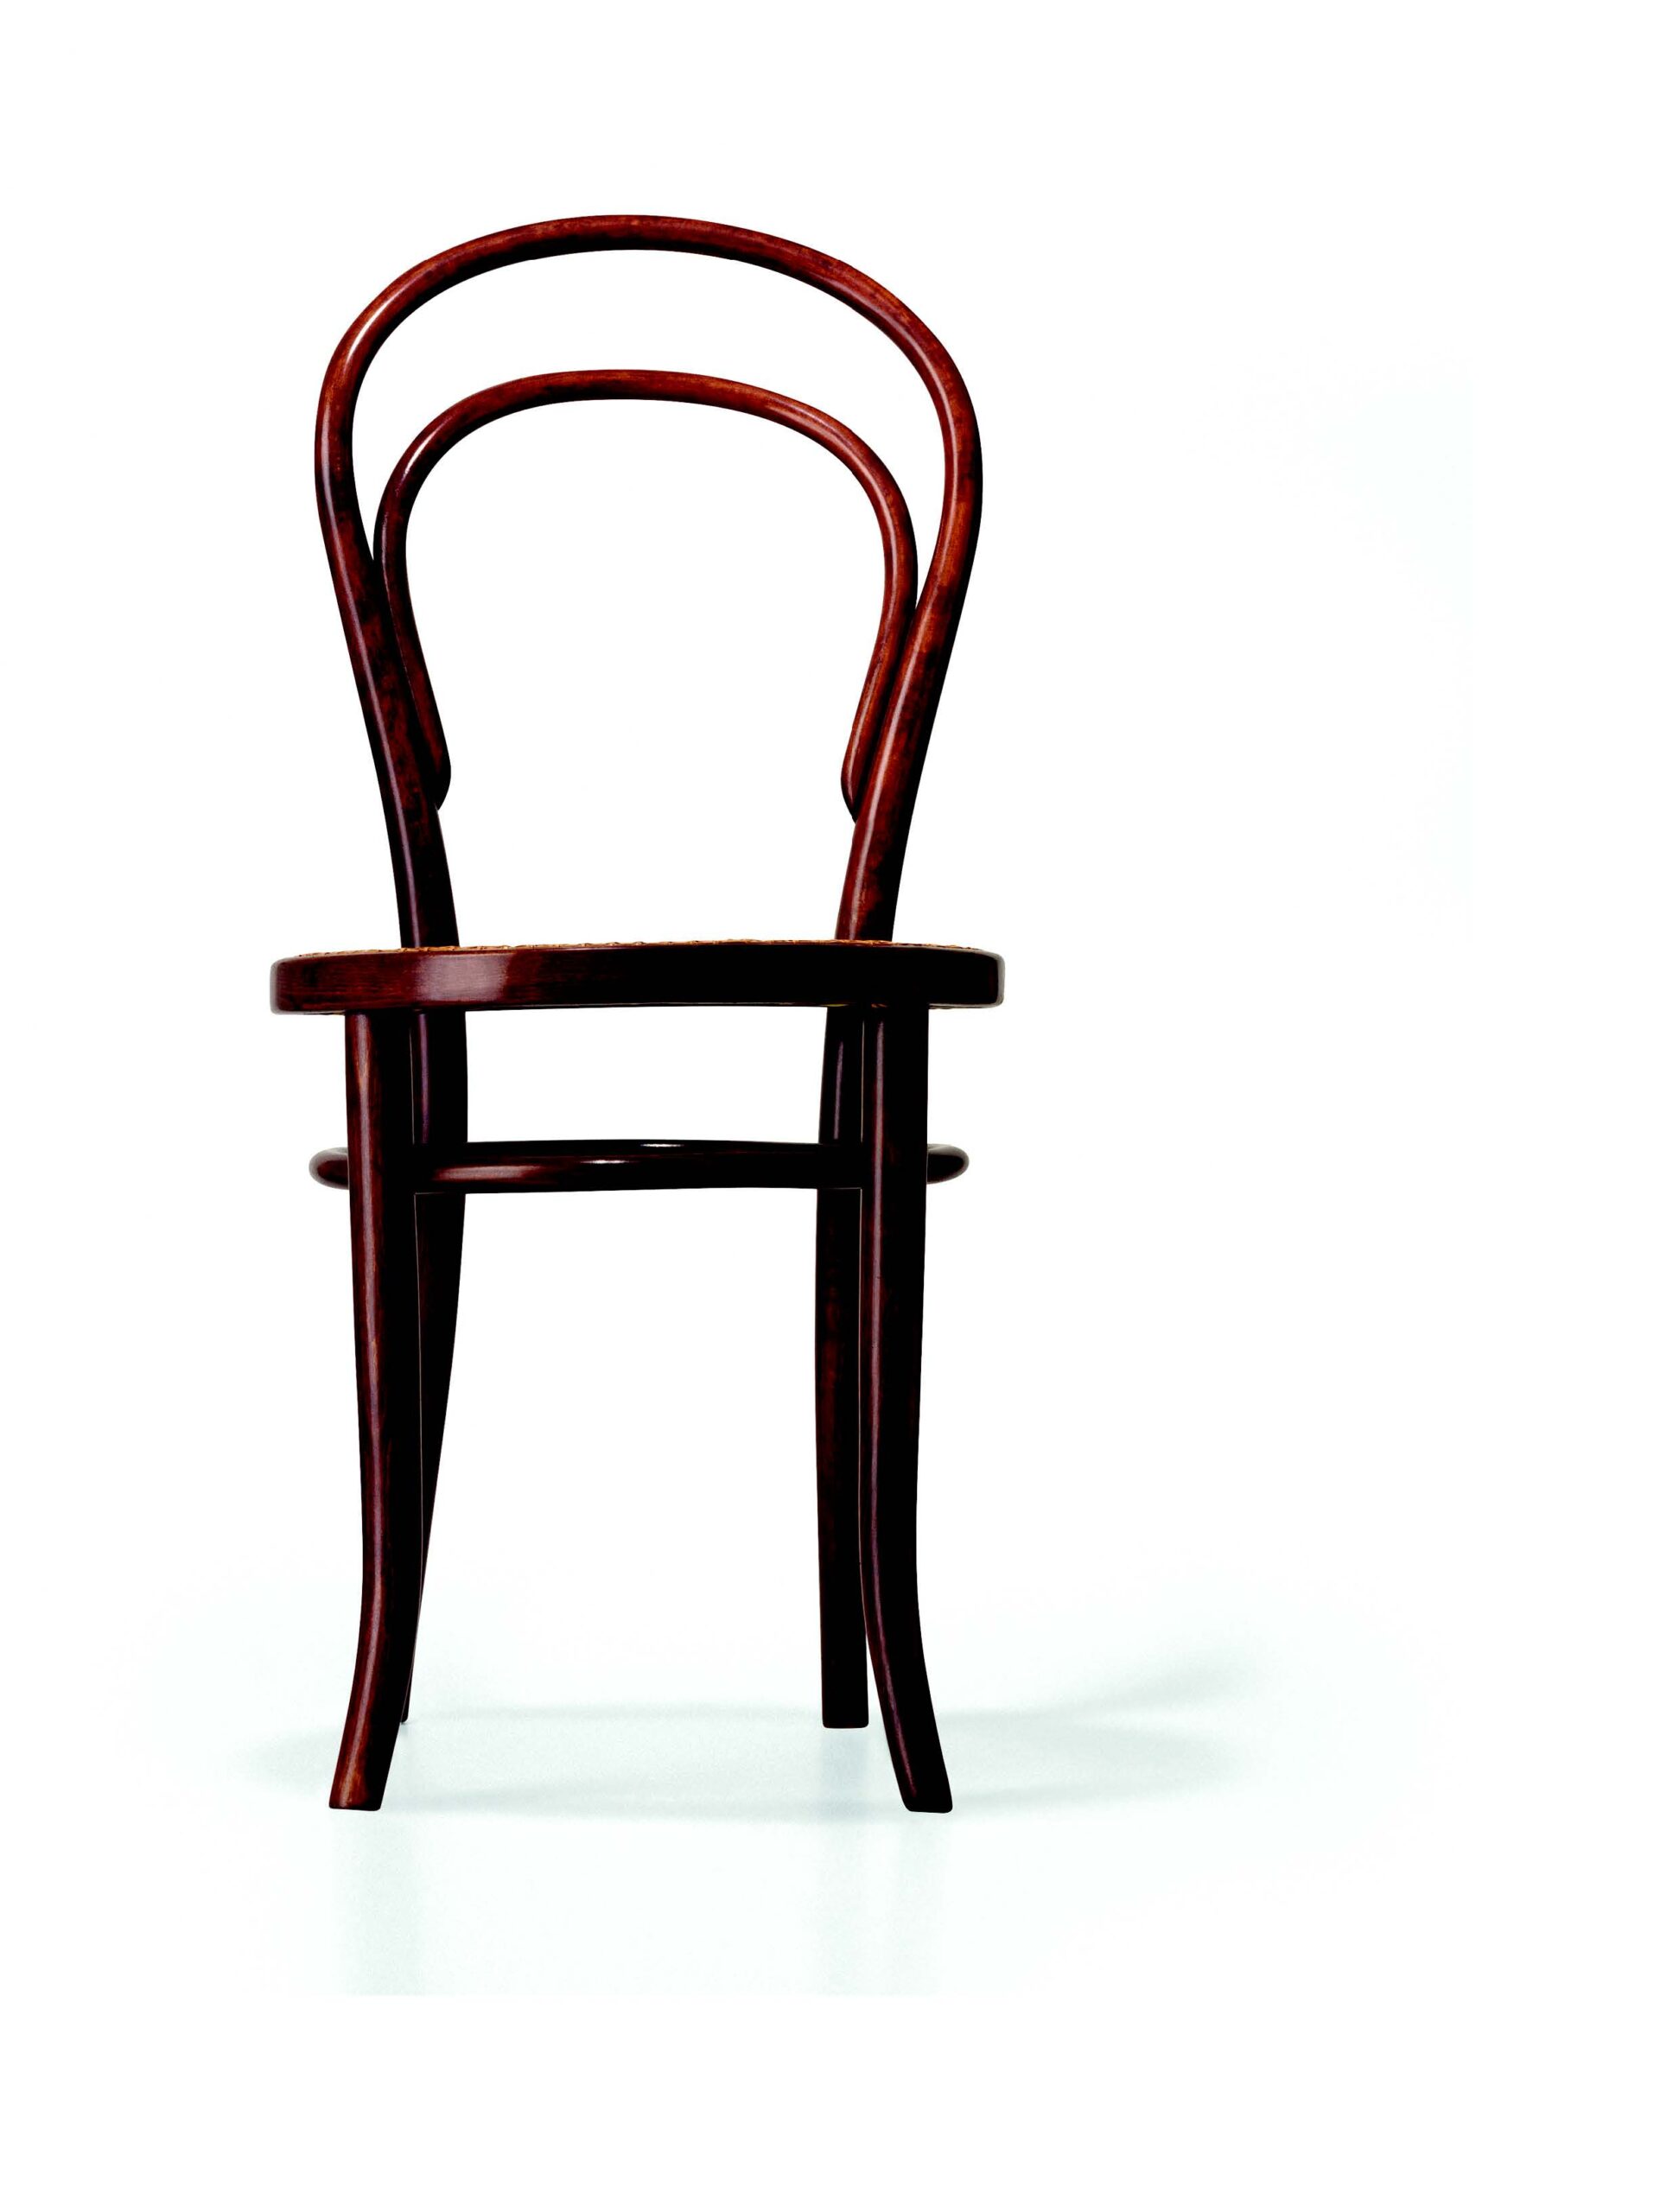 A Thonet No.14 chair